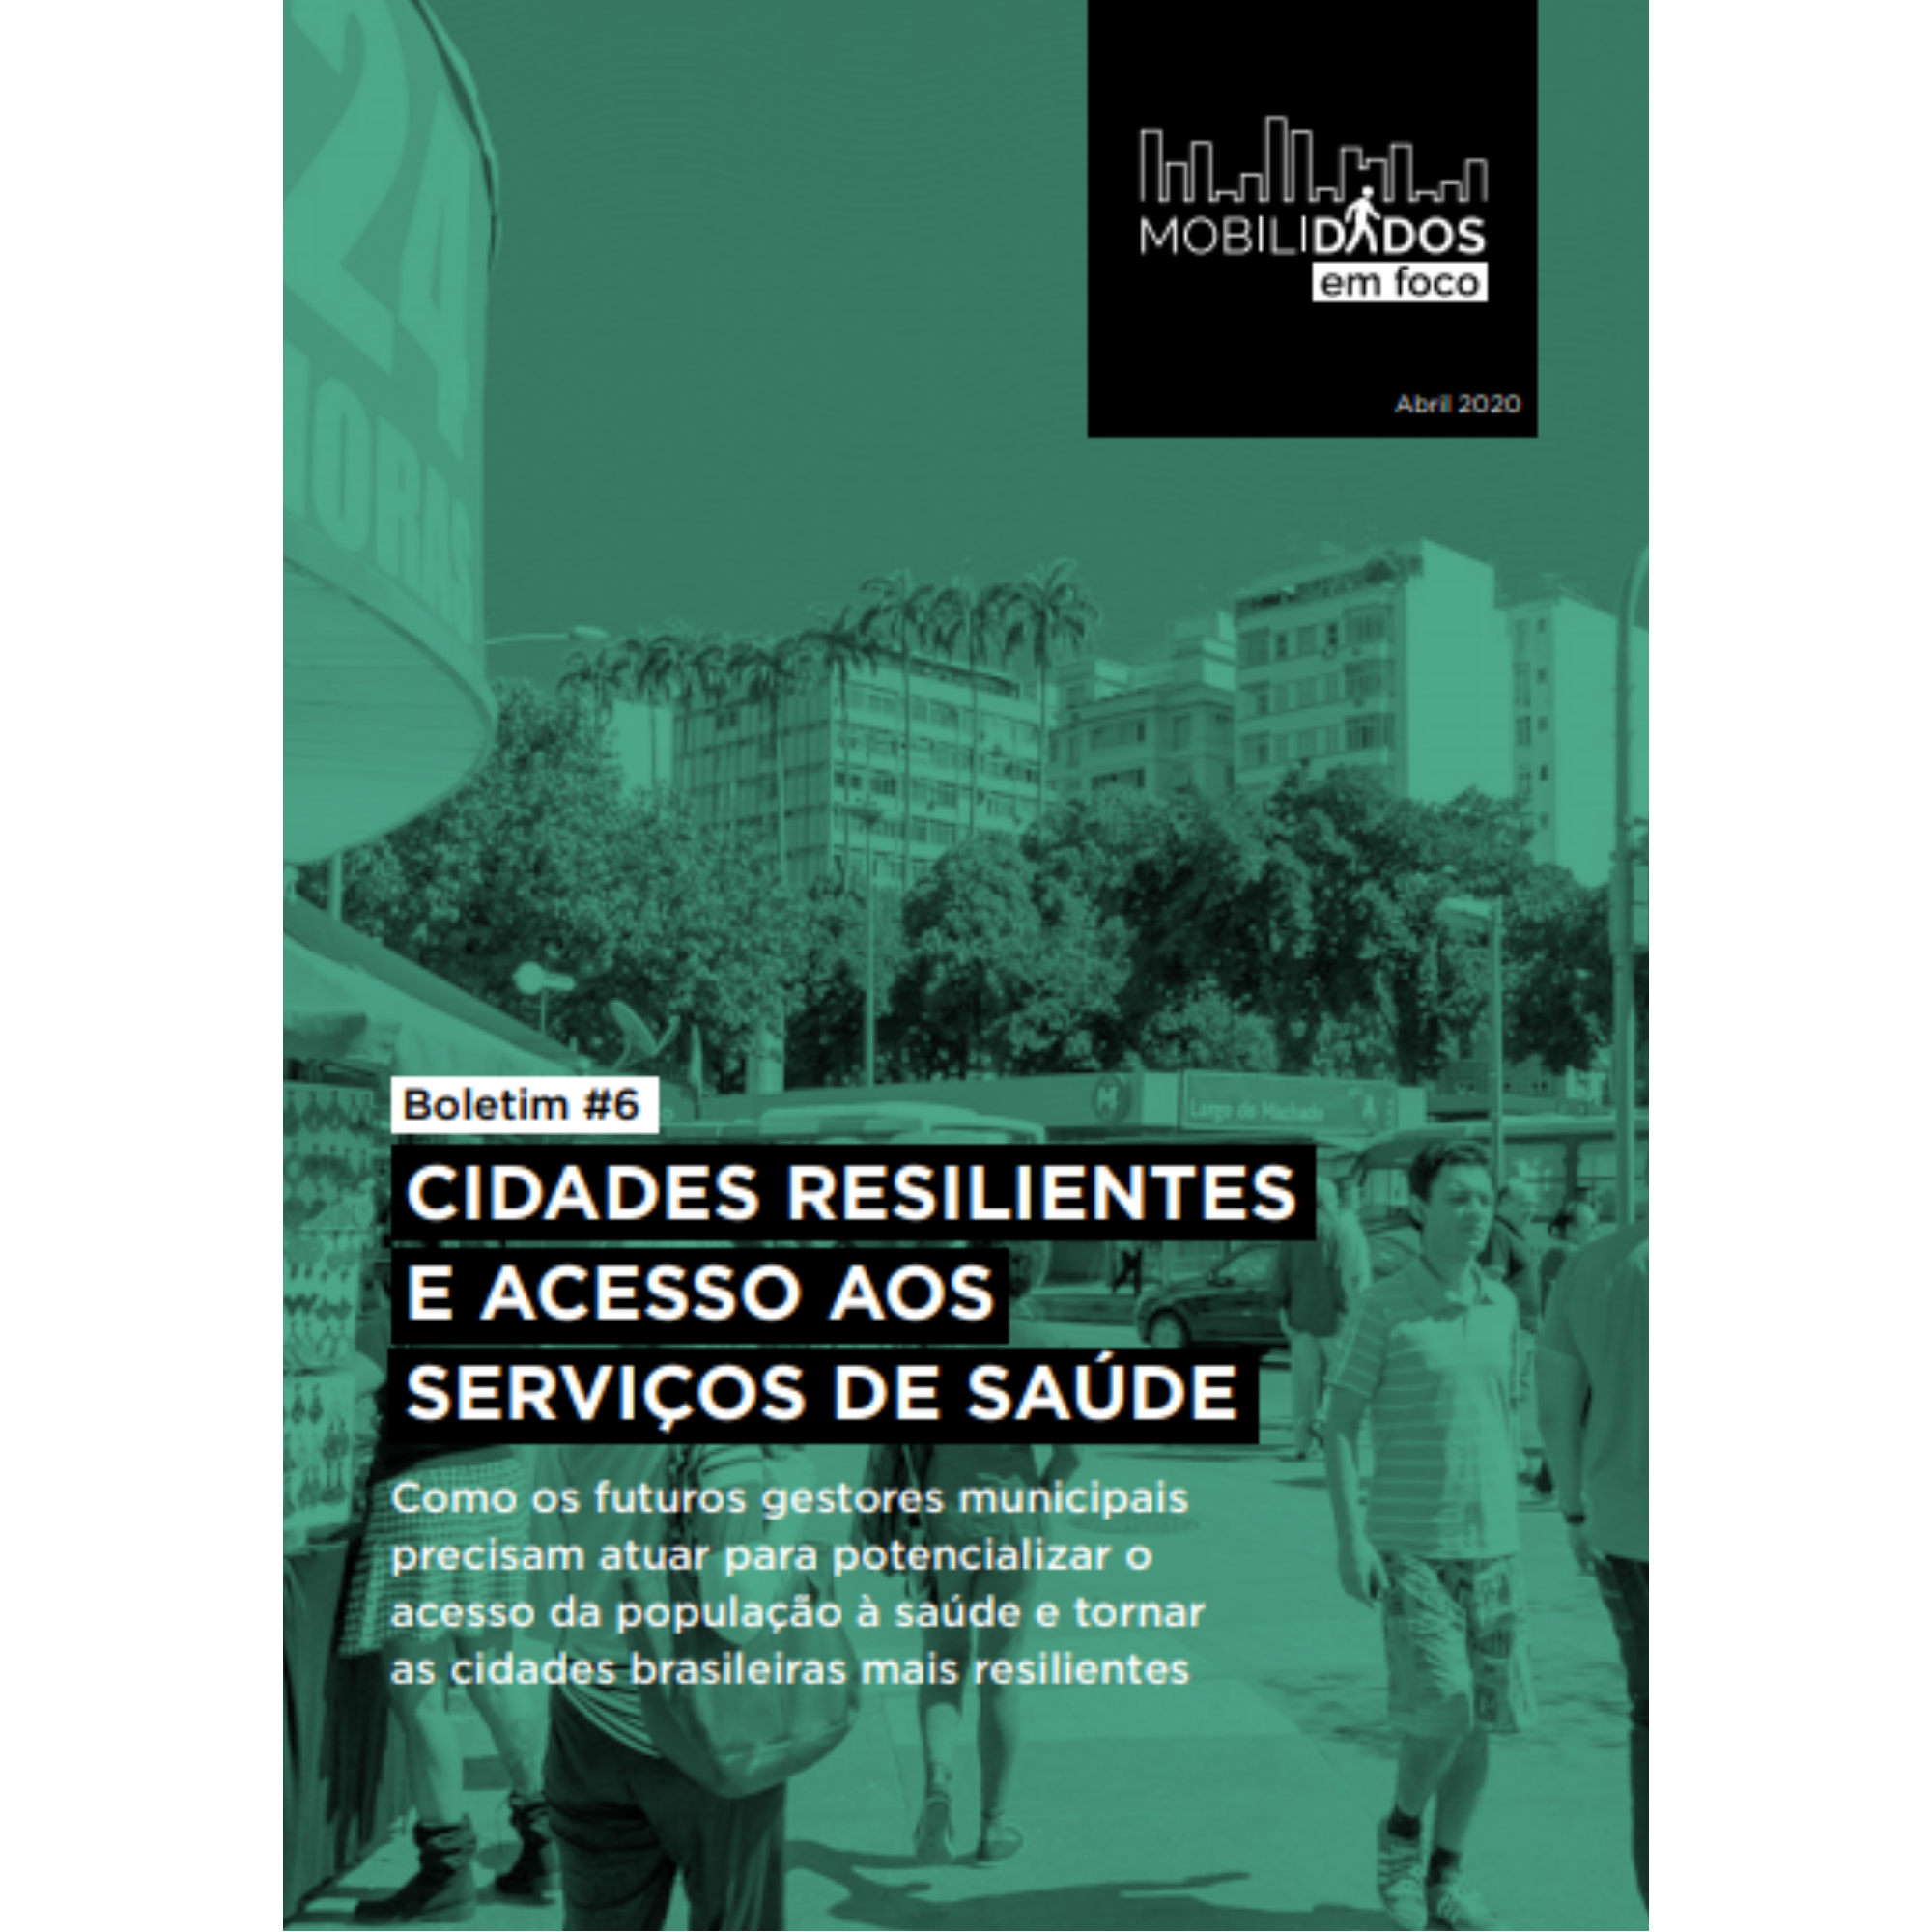 Boletim #6 MobiliDADOS: cidades resilientes e acesso aos serviços de saúde